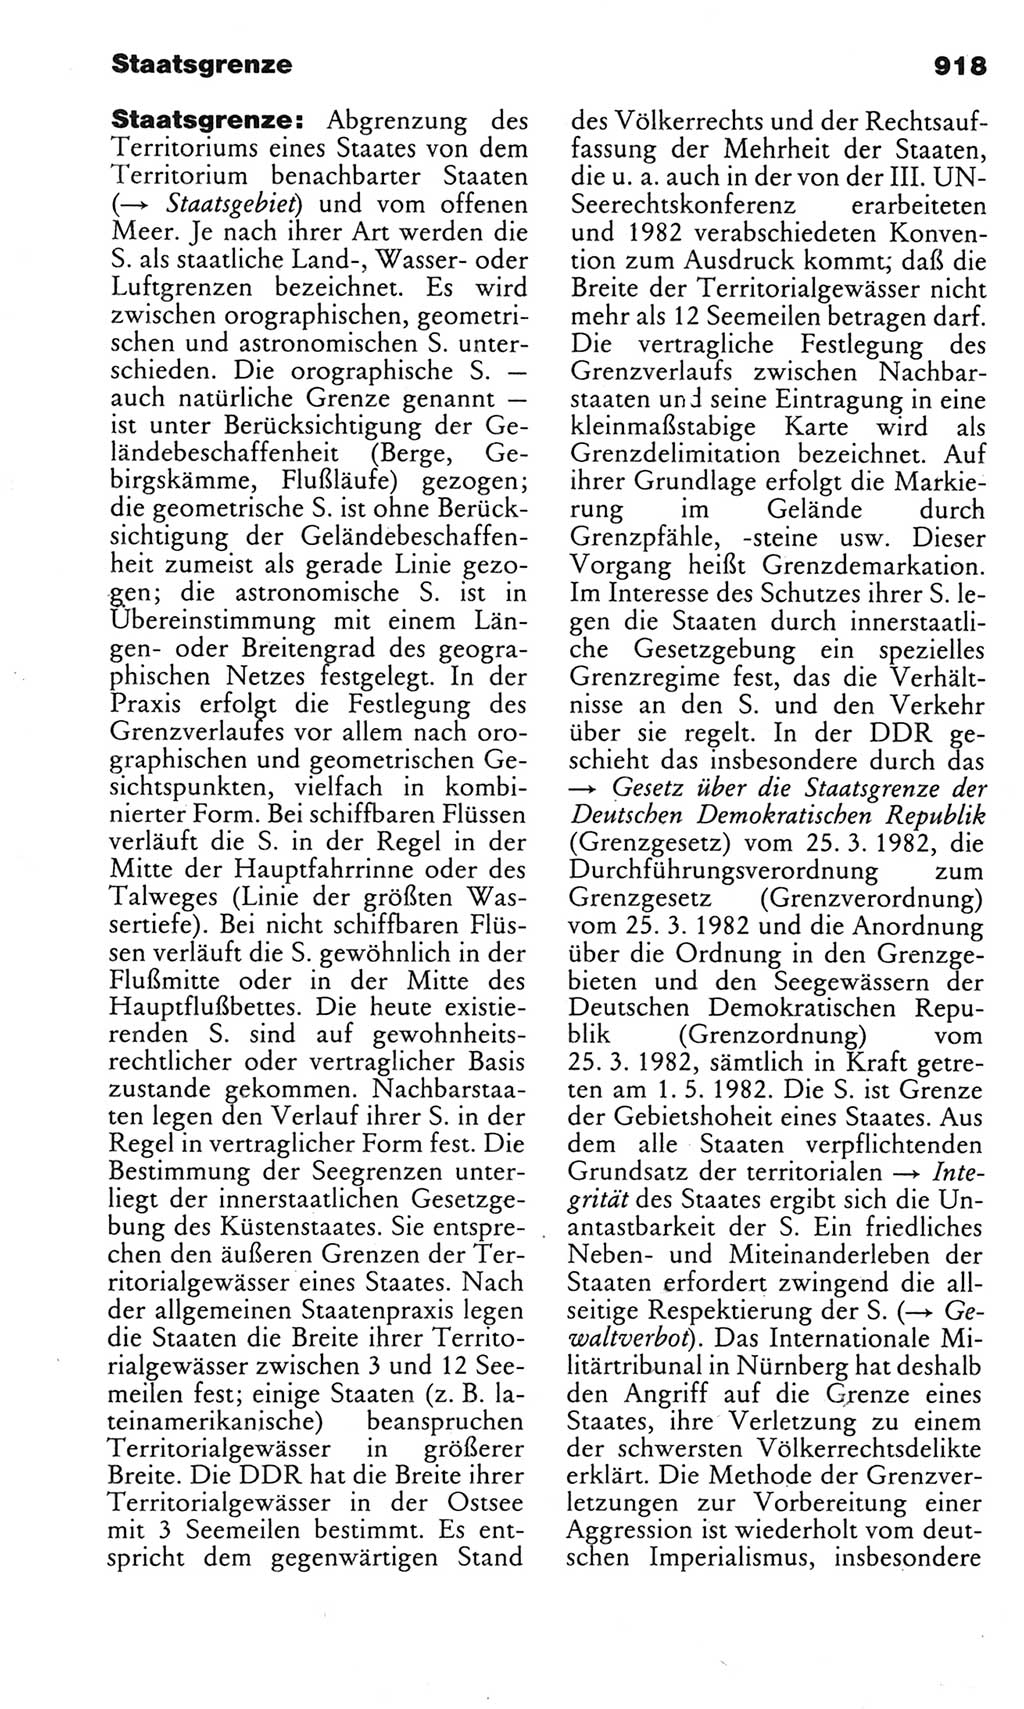 Kleines politisches Wörterbuch [Deutsche Demokratische Republik (DDR)] 1983, Seite 918 (Kl. pol. Wb. DDR 1983, S. 918)